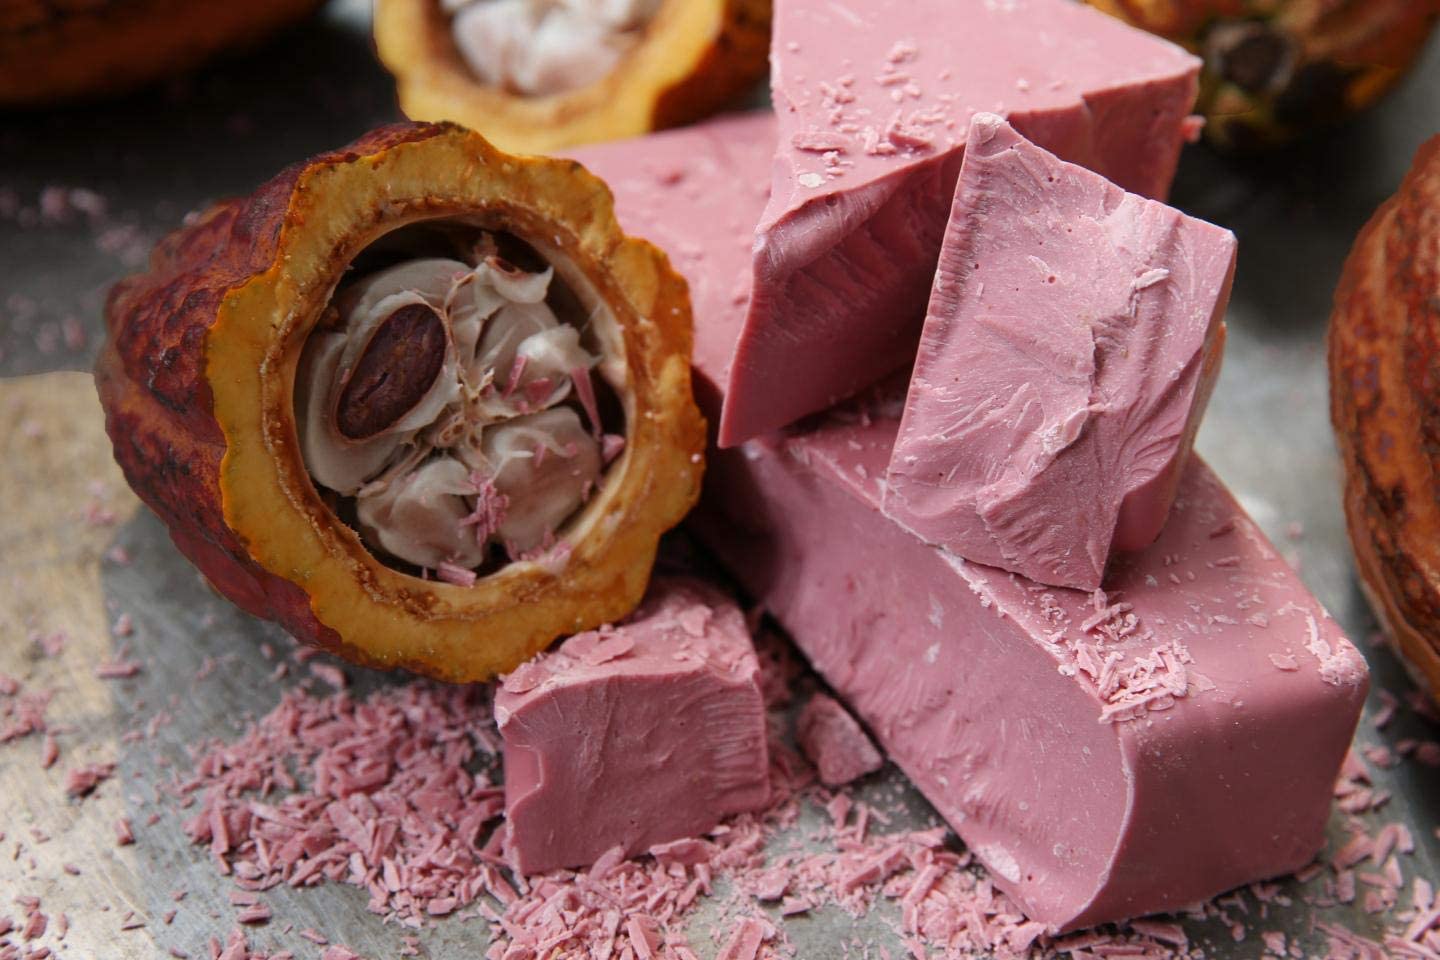 Callebaut Ruby 47.3% gocce di cioccolato belga Ruby più fini 1 kg, in un sacchetto richiudibile